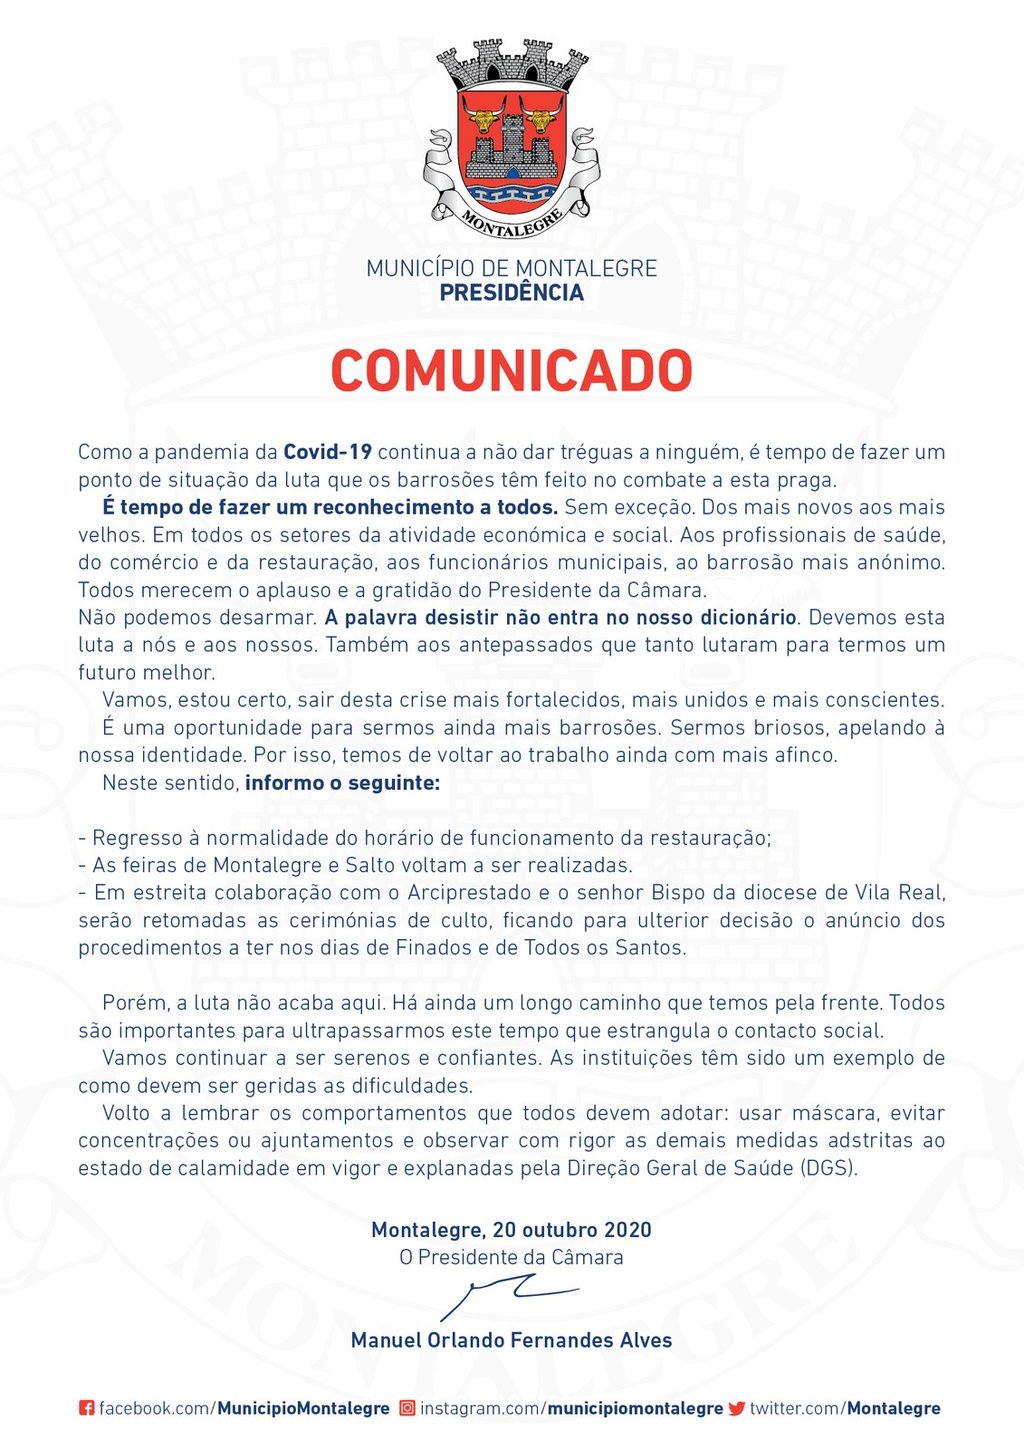 Presidente | Comunicado (20.10.2020)